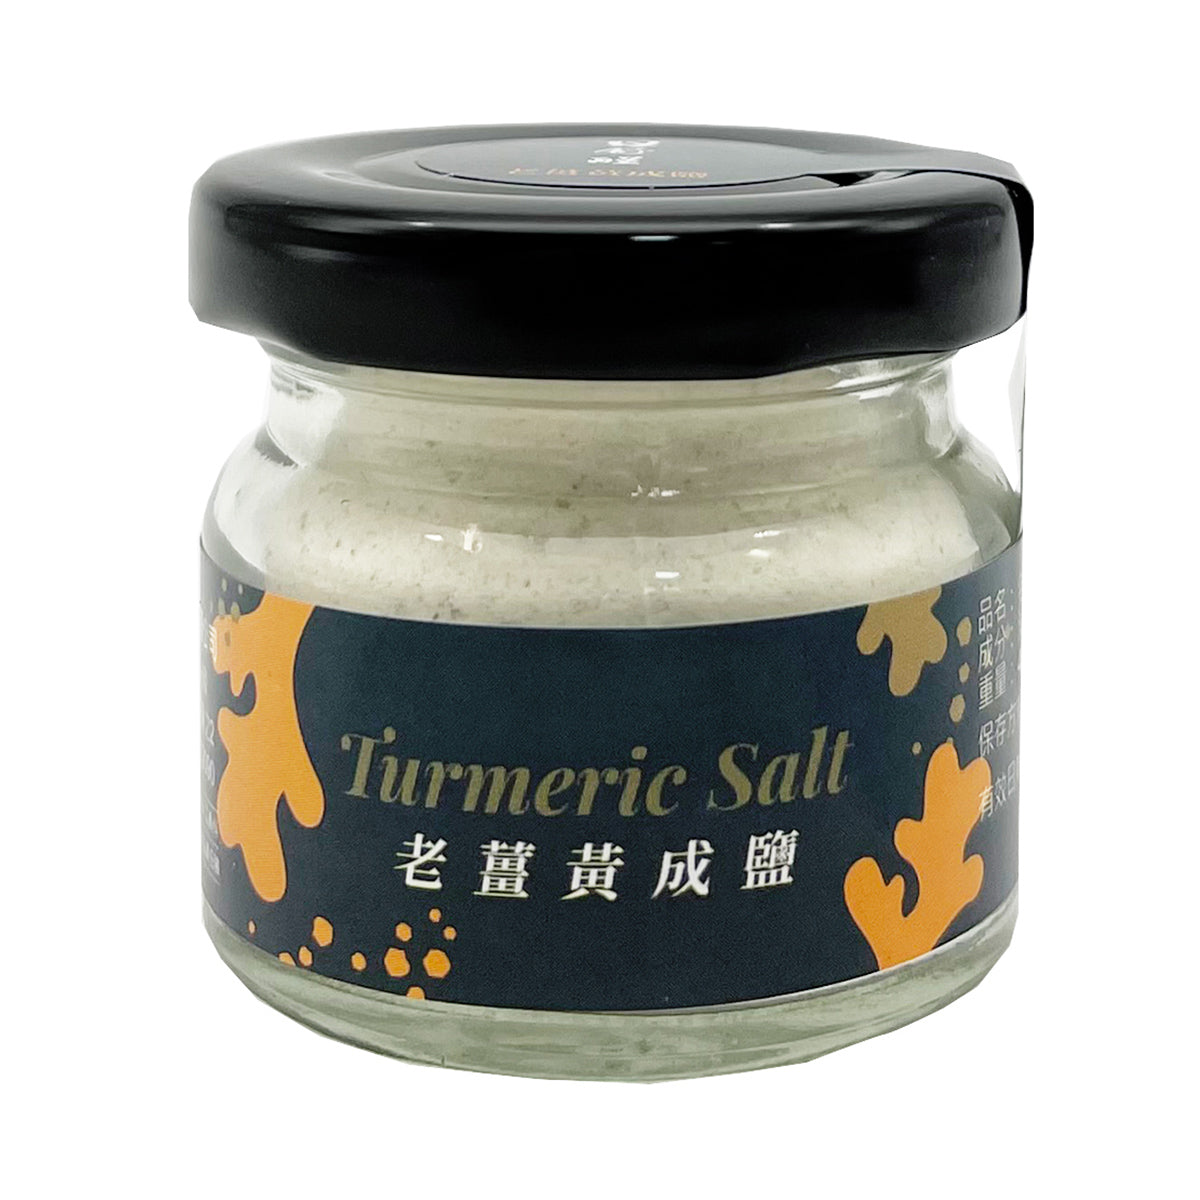 【AWAKENED TASTE】Turmeric Salt 40g